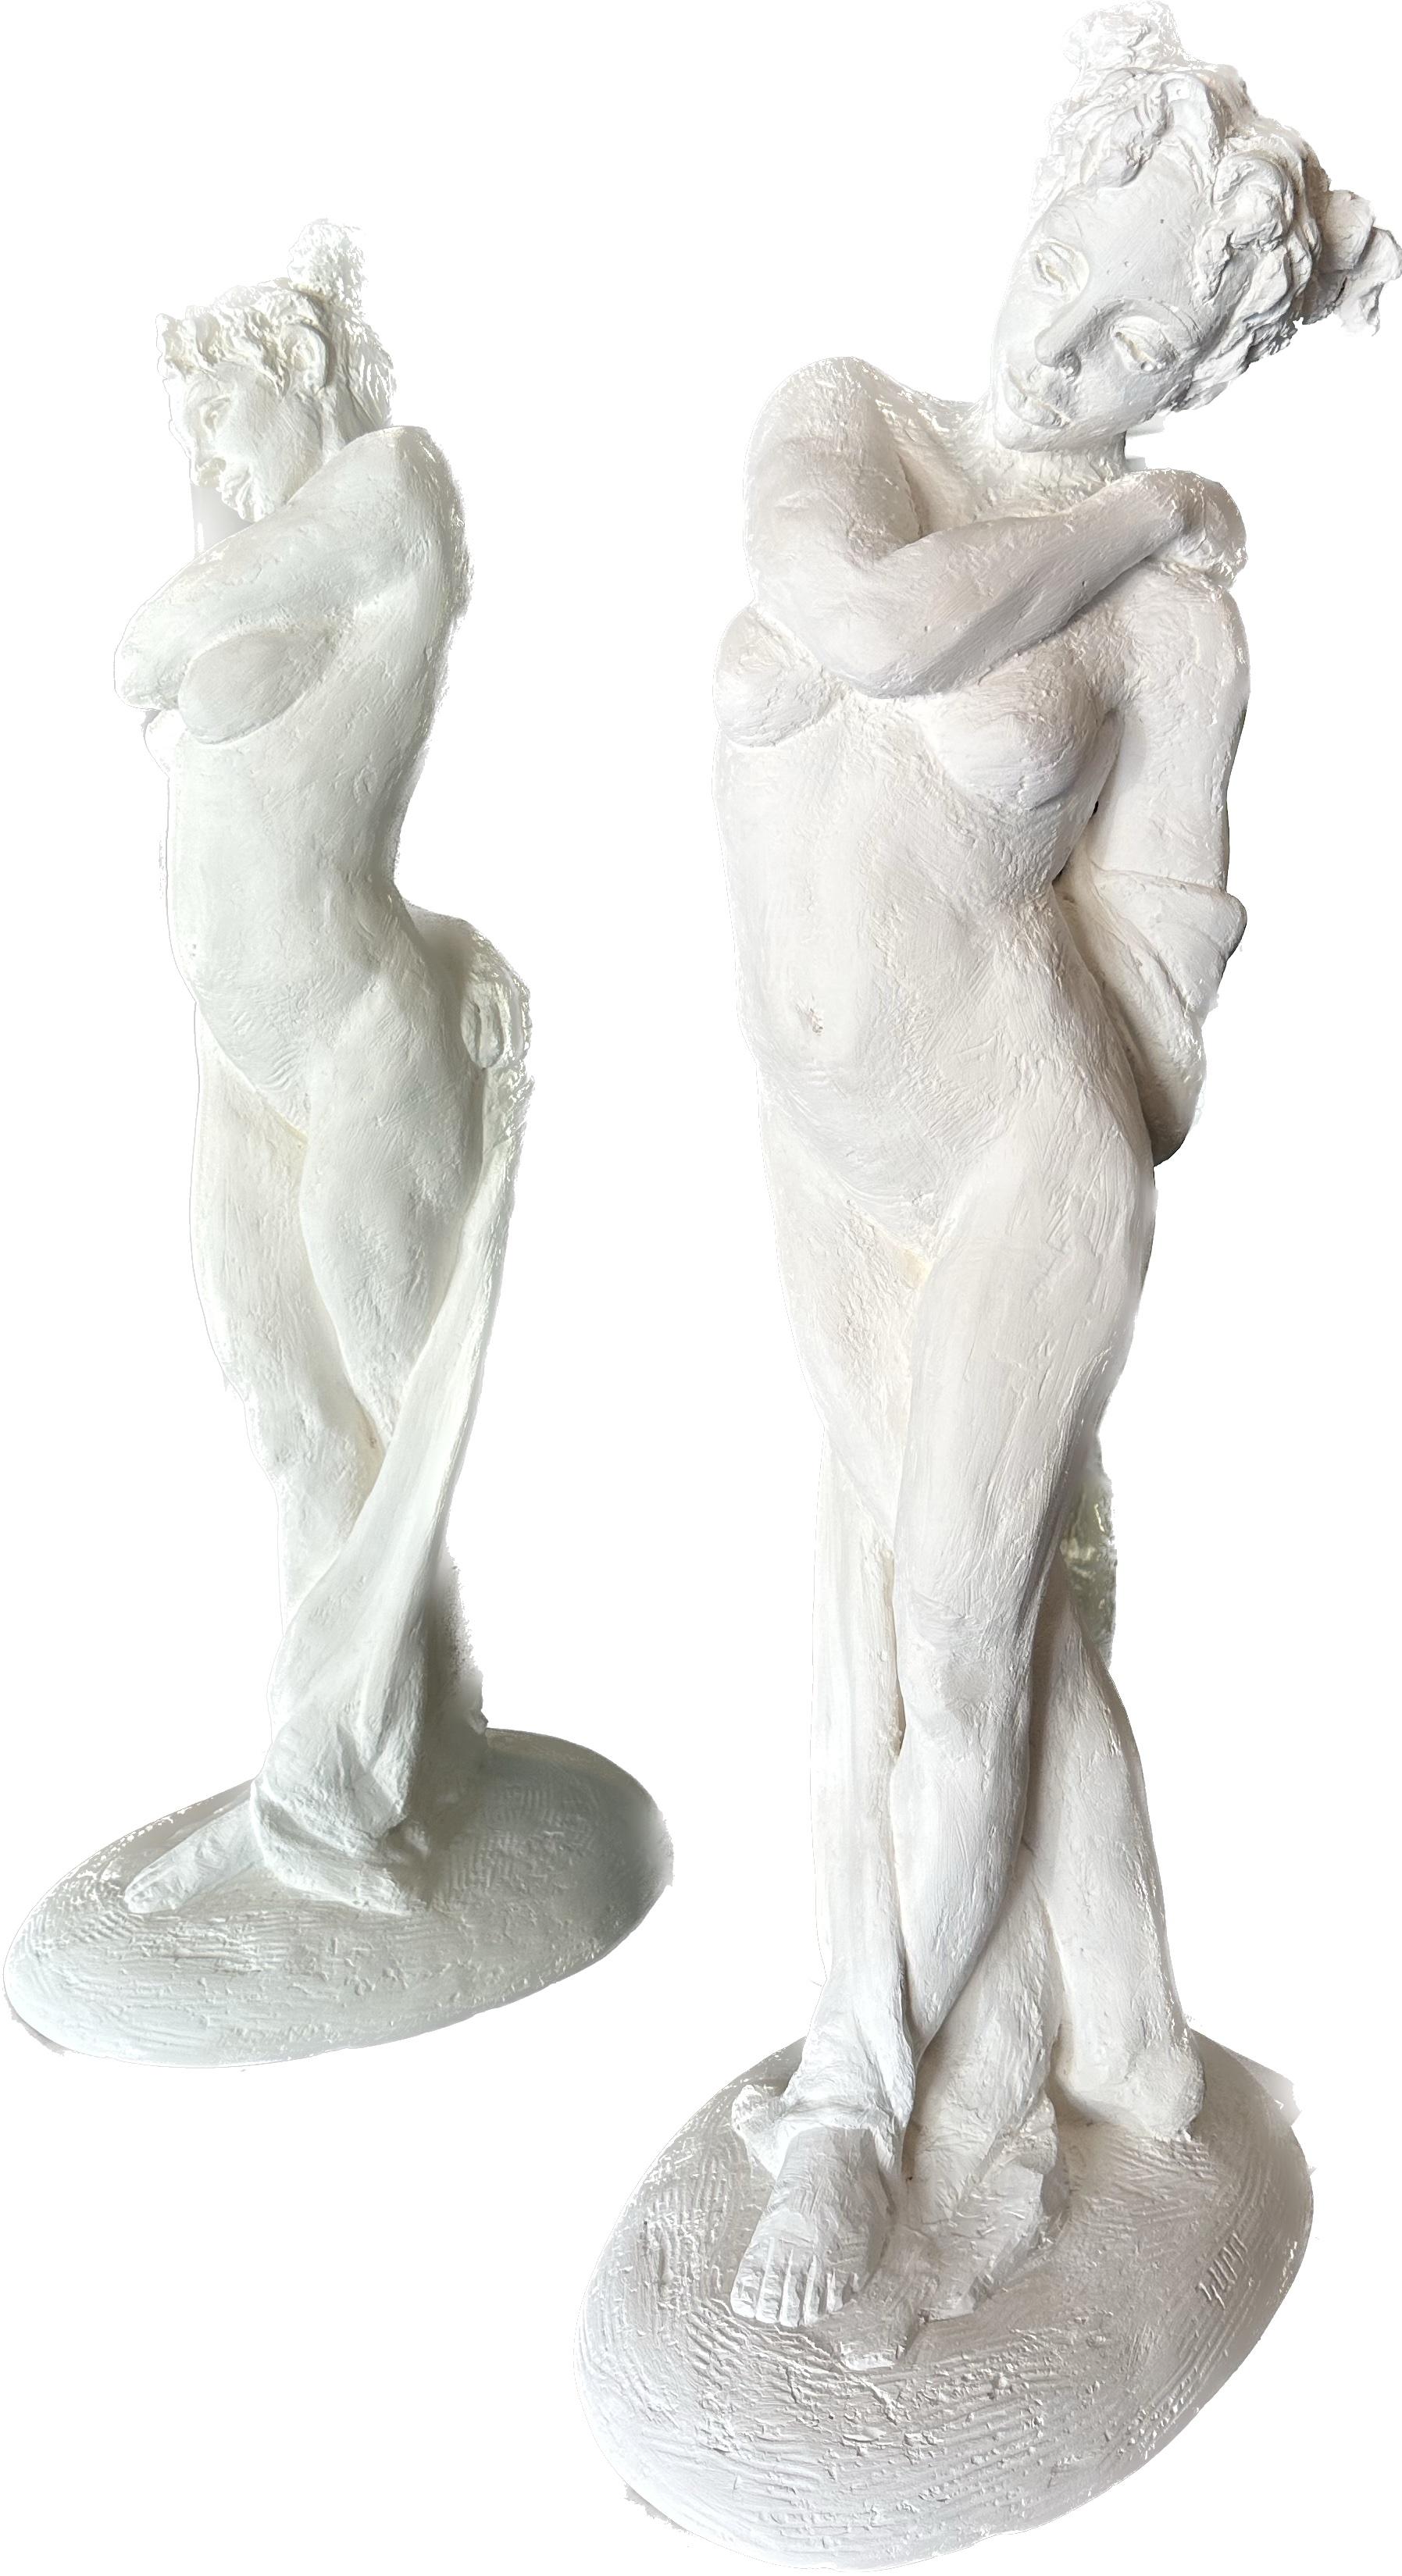 Karapet Balakeseryan  (Garo) Figurative Sculpture – Standender Akt, Figur, Skulptur, Hydro-Stein, Staubmarmor Handgefertigt von Garo